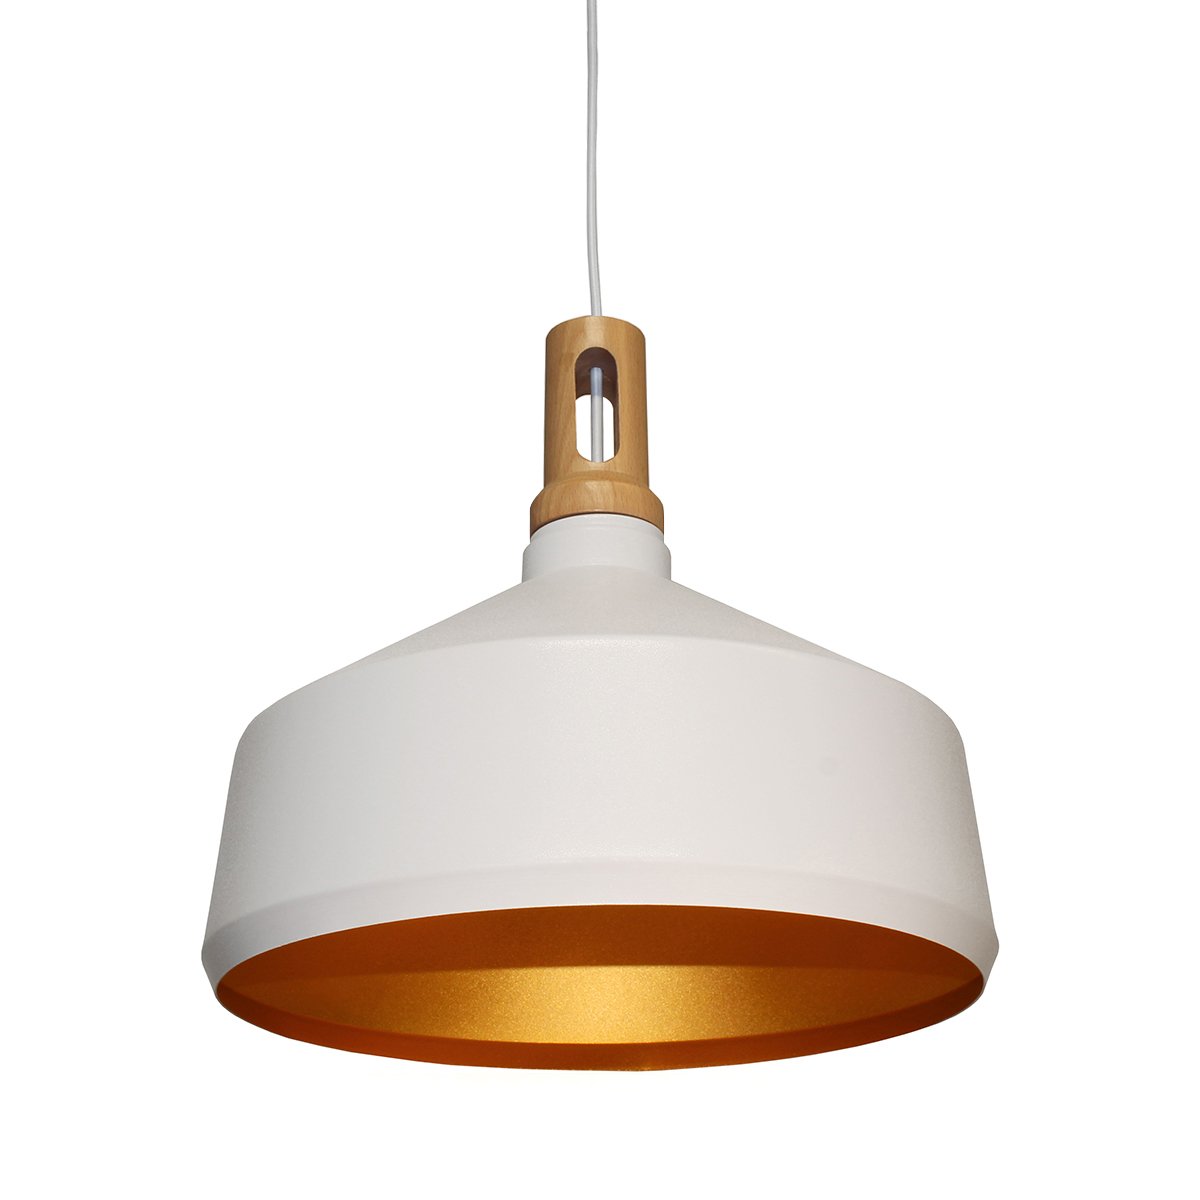 Design Verlichting Plafondlamp retro wit goud Allein - Ø 36 cm